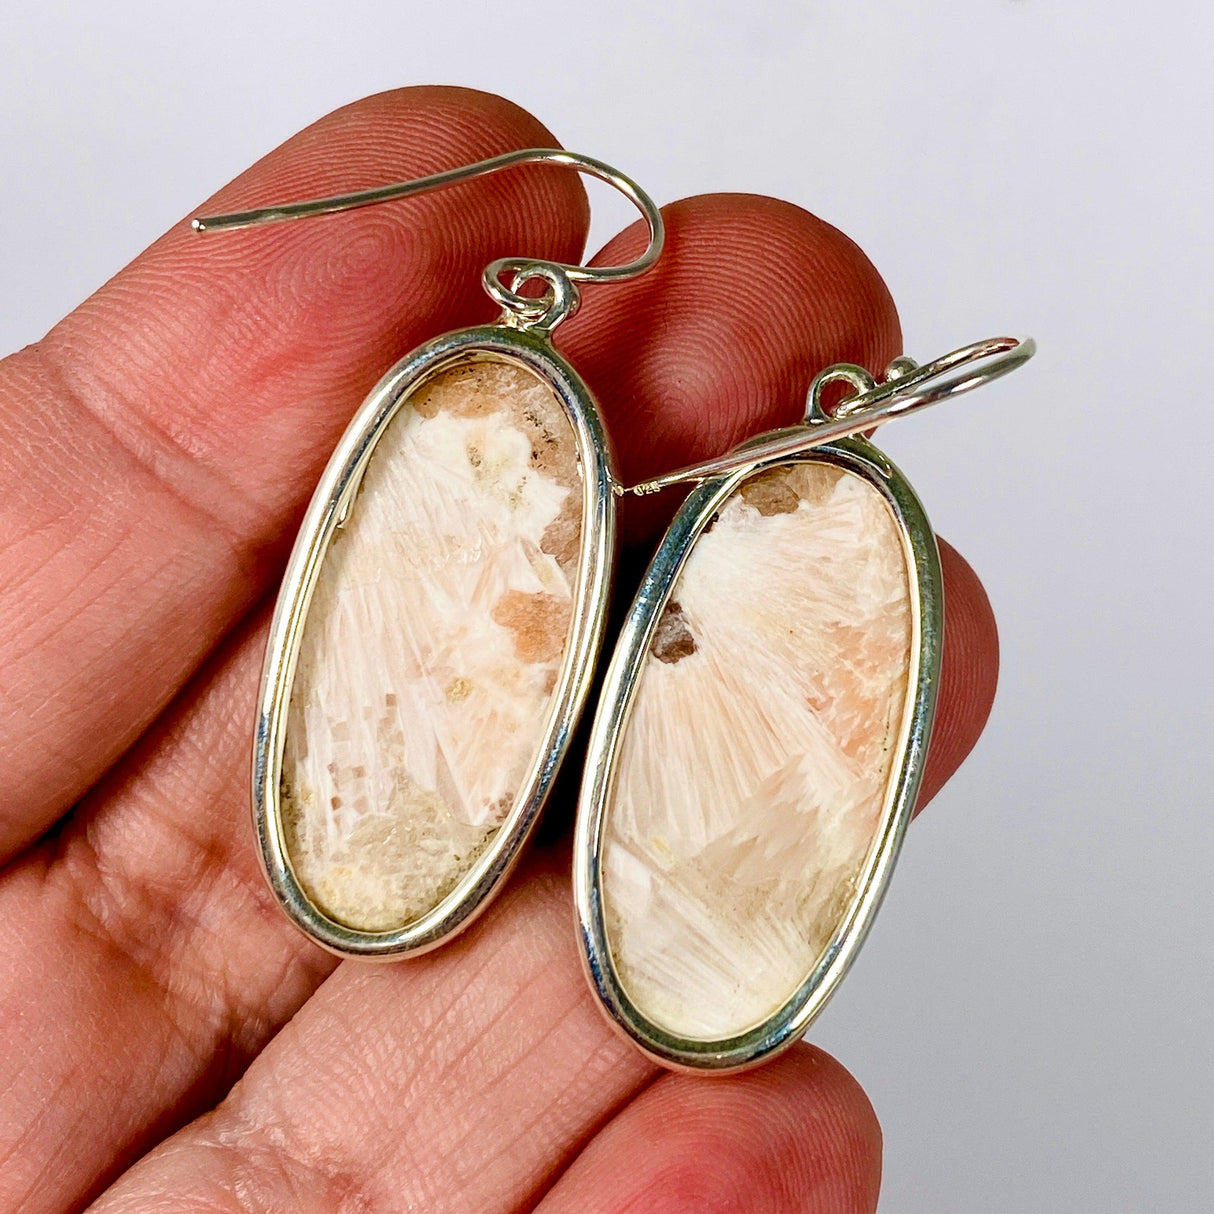 Scolecite oval earrings KEGJ1323